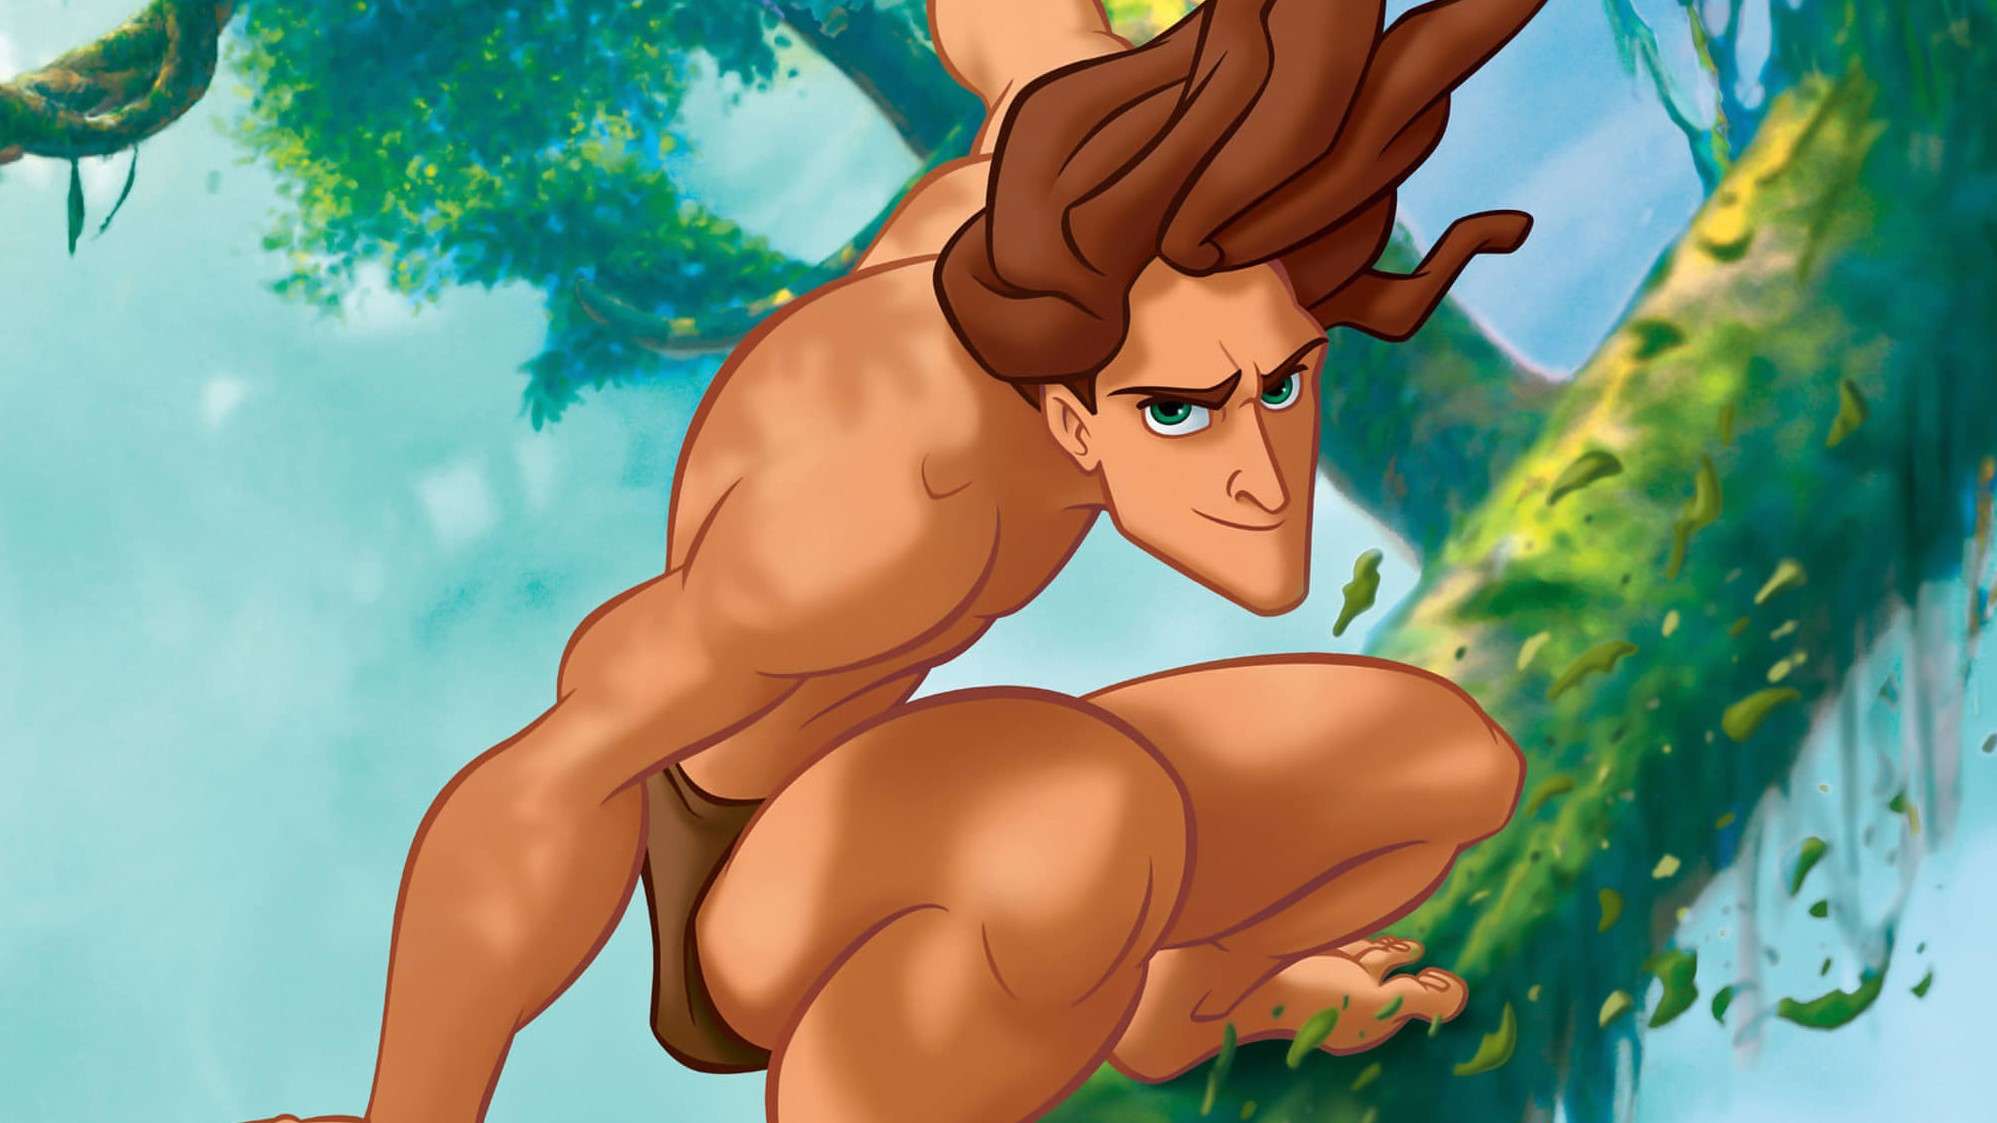 Sau Tiên Cá và Bạch Tuyết, Tarzan sẽ là 'nạn nhân' tiếp theo của xu hướng thay đổi nguyên tác